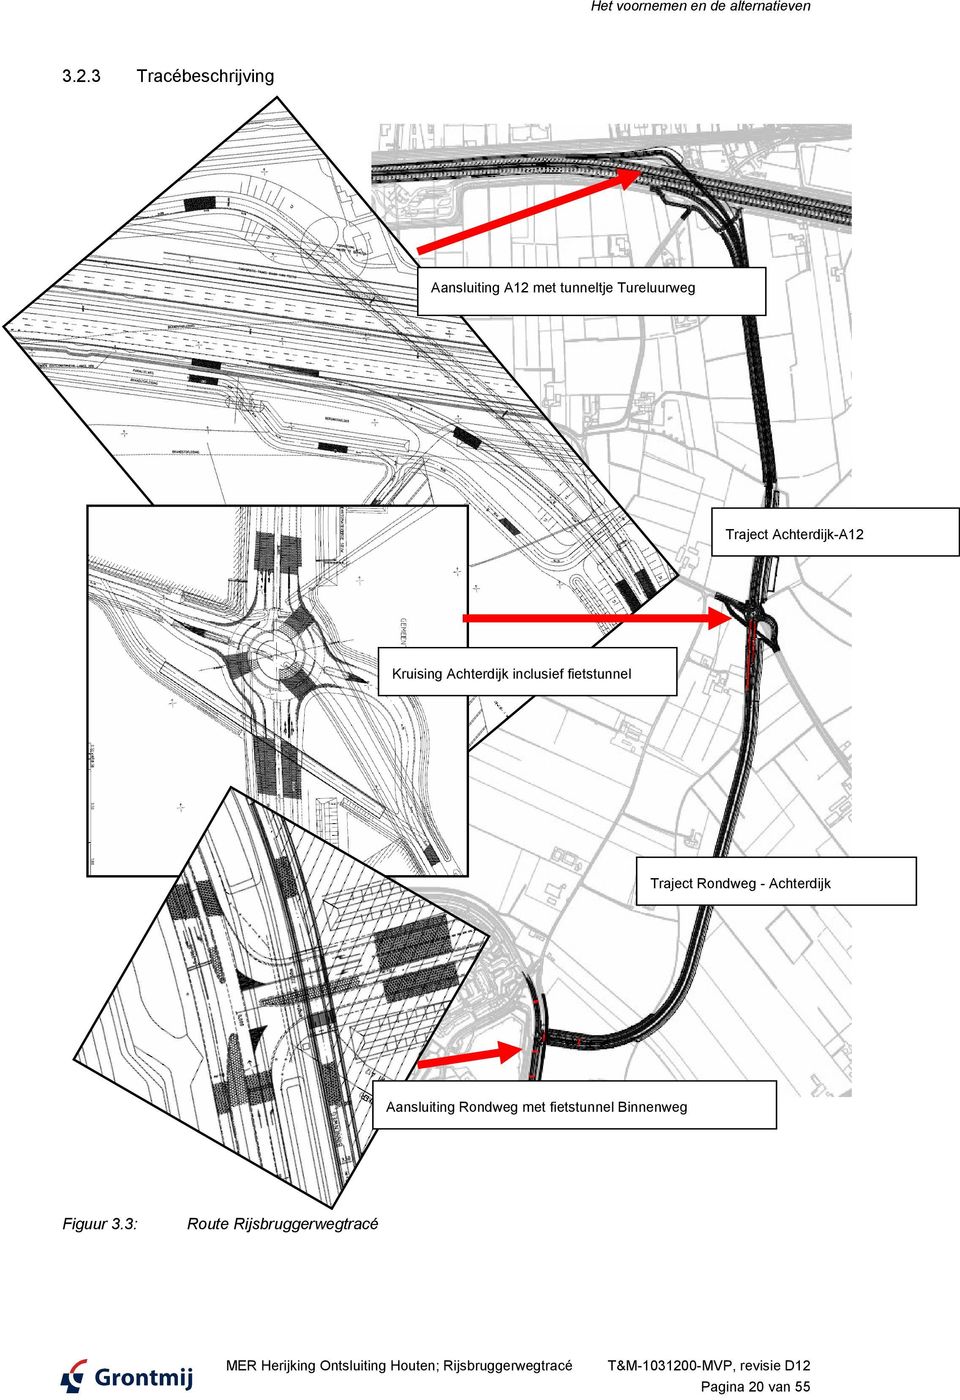 Achterdijk inclusief fietstunnel Traject Rondweg - Achterdijk Aansluiting Rondweg met